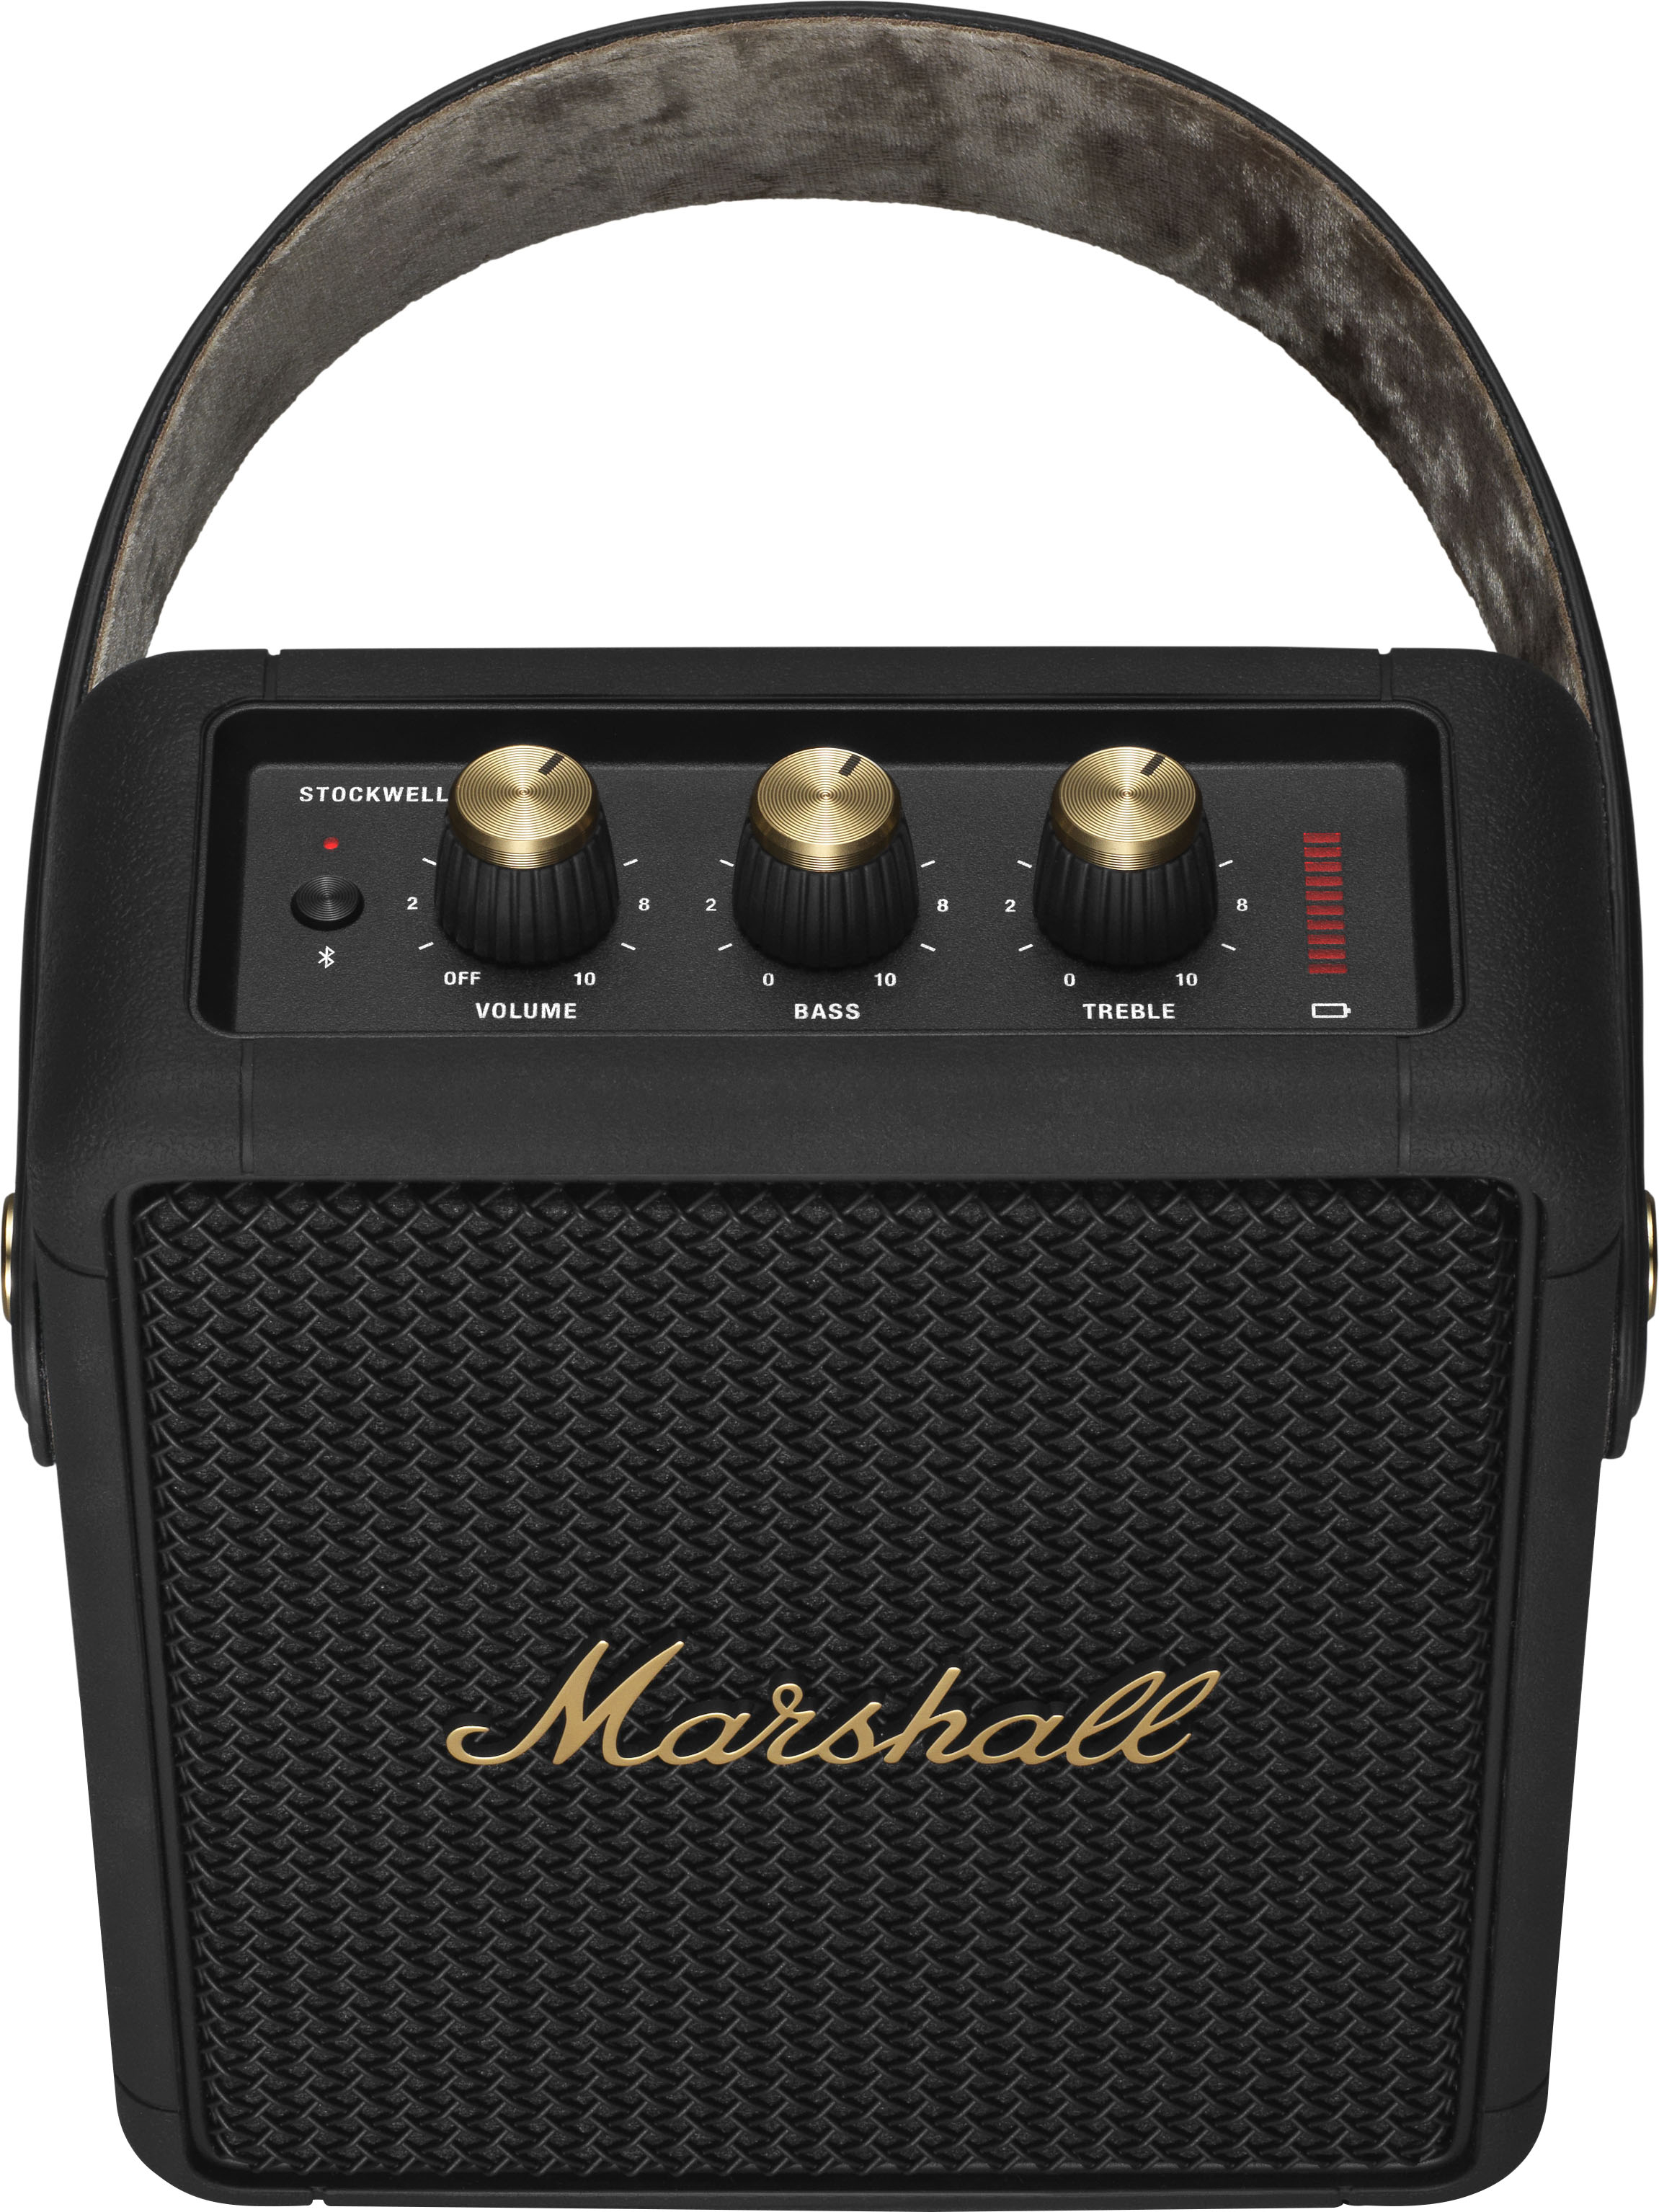 Parlante Bluetooth Marshall Stockwell 2 Potente Original